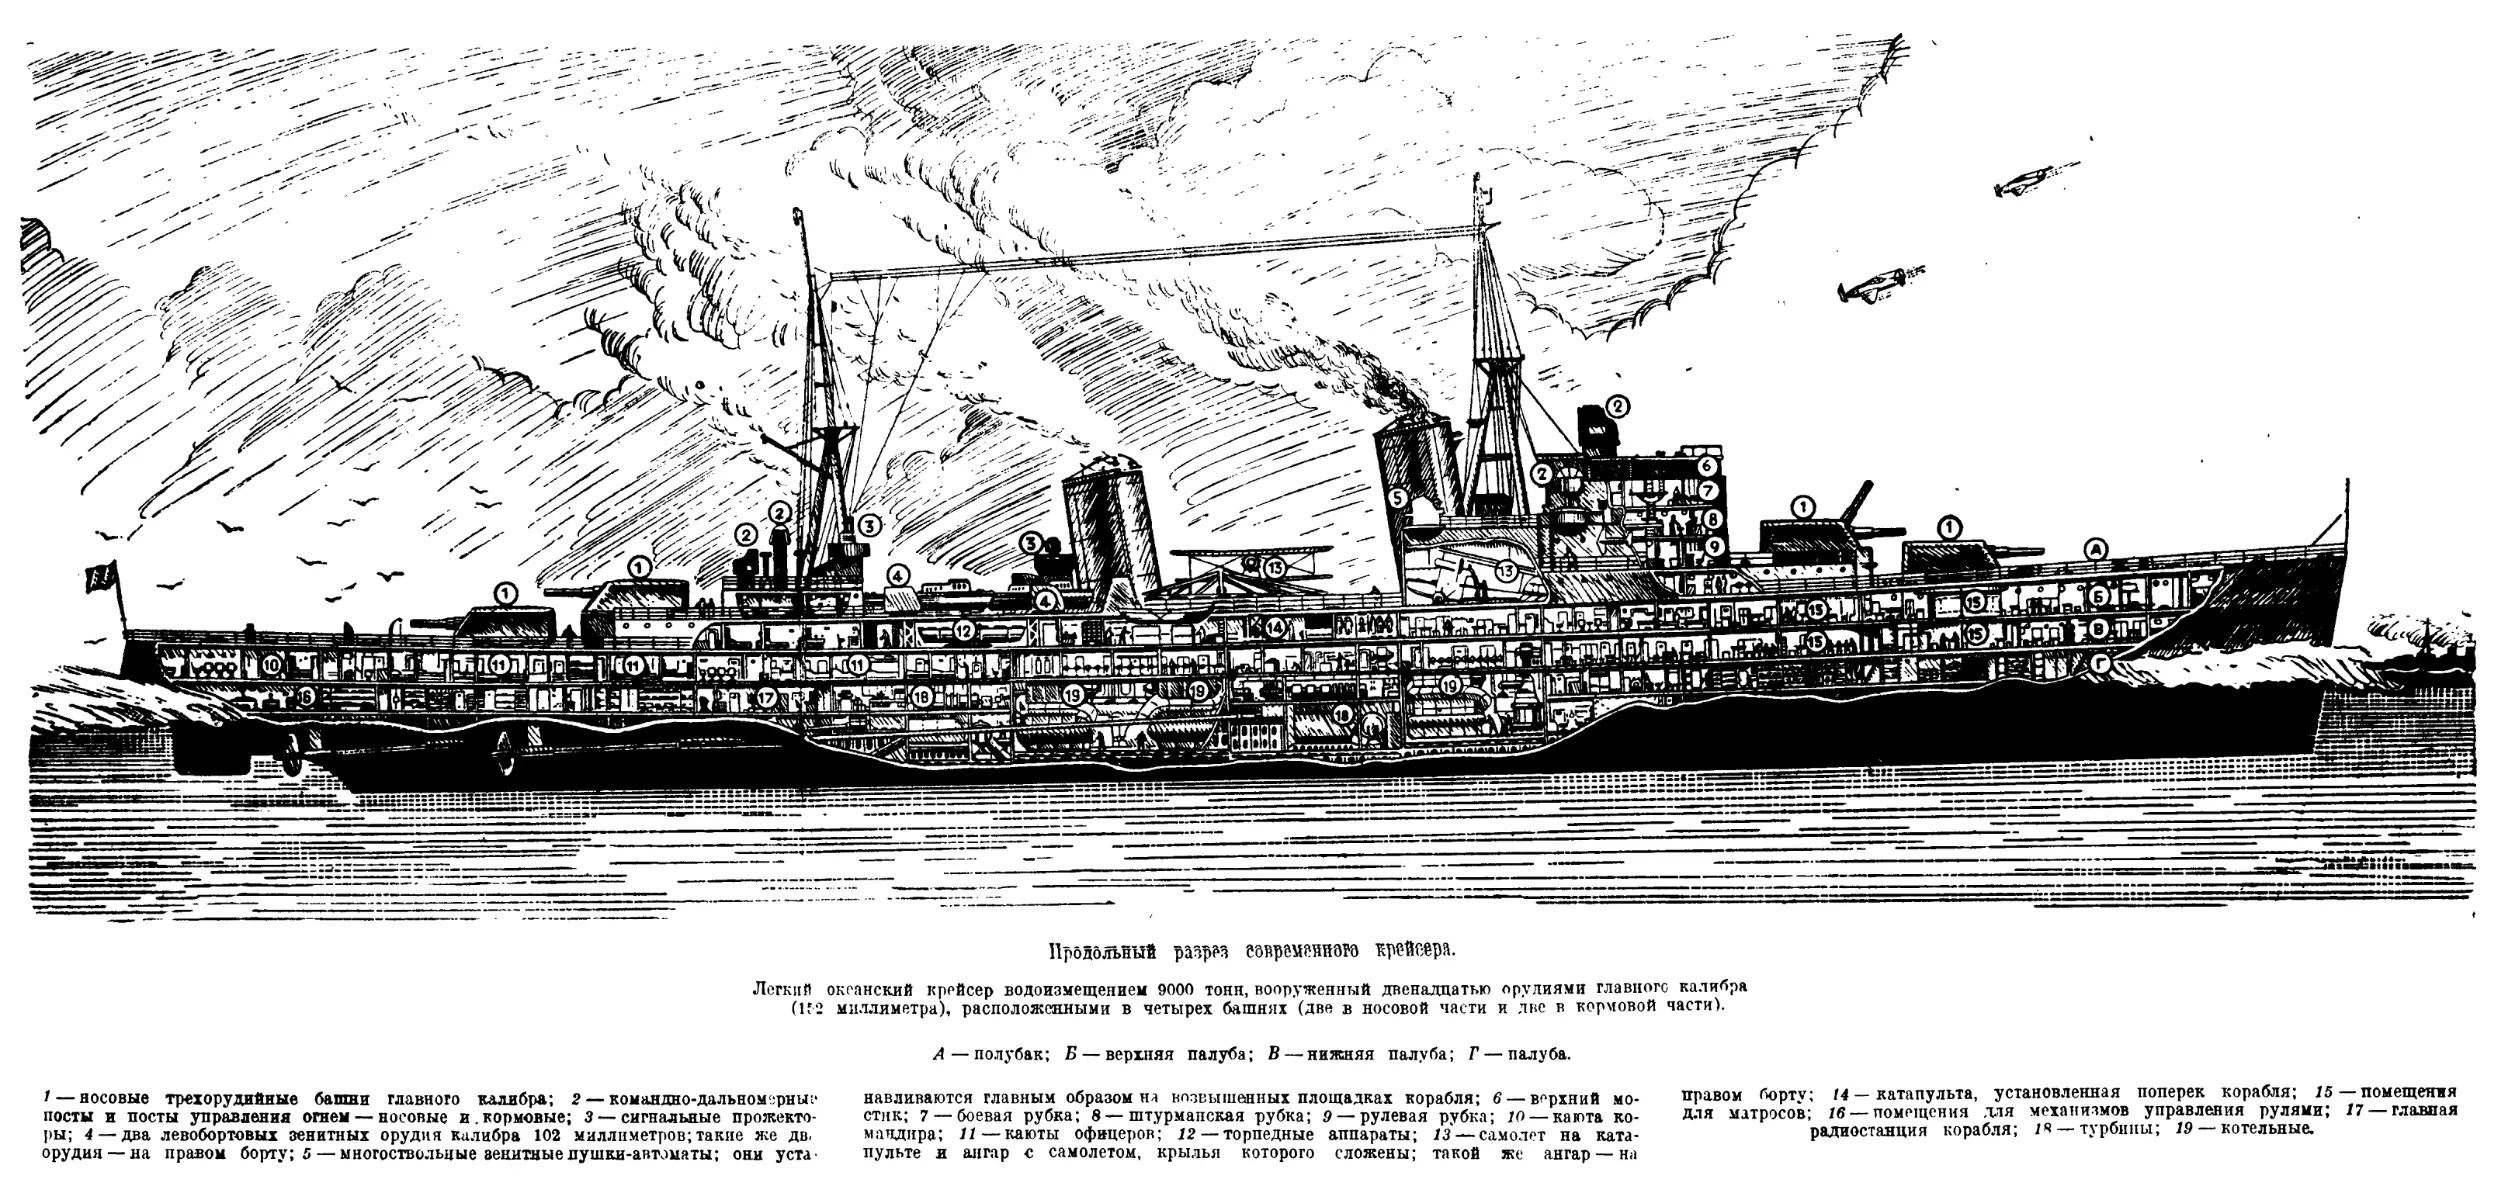 Вклейка 2а. Продольный разрез современного крейсера